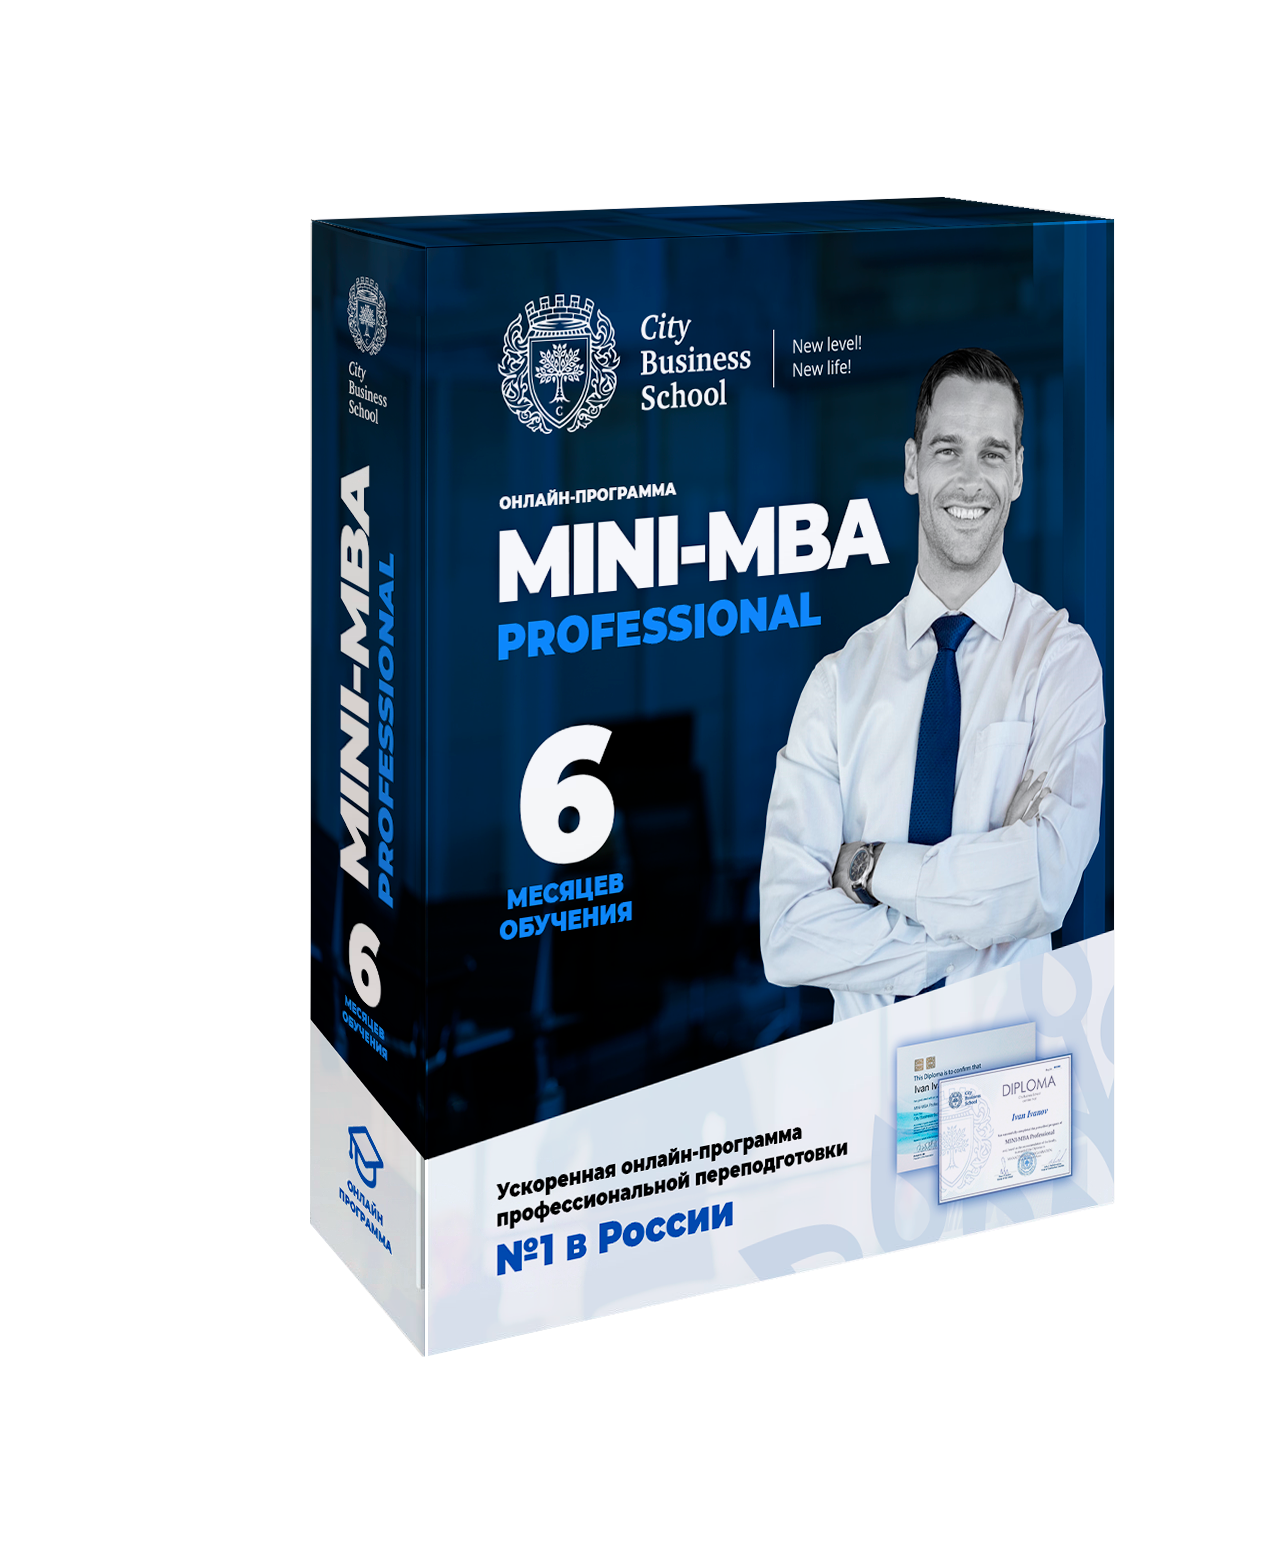 Мини MBA. Программа Mini MBA,. City Business School Mini-MBA professional. Бизнес скул.